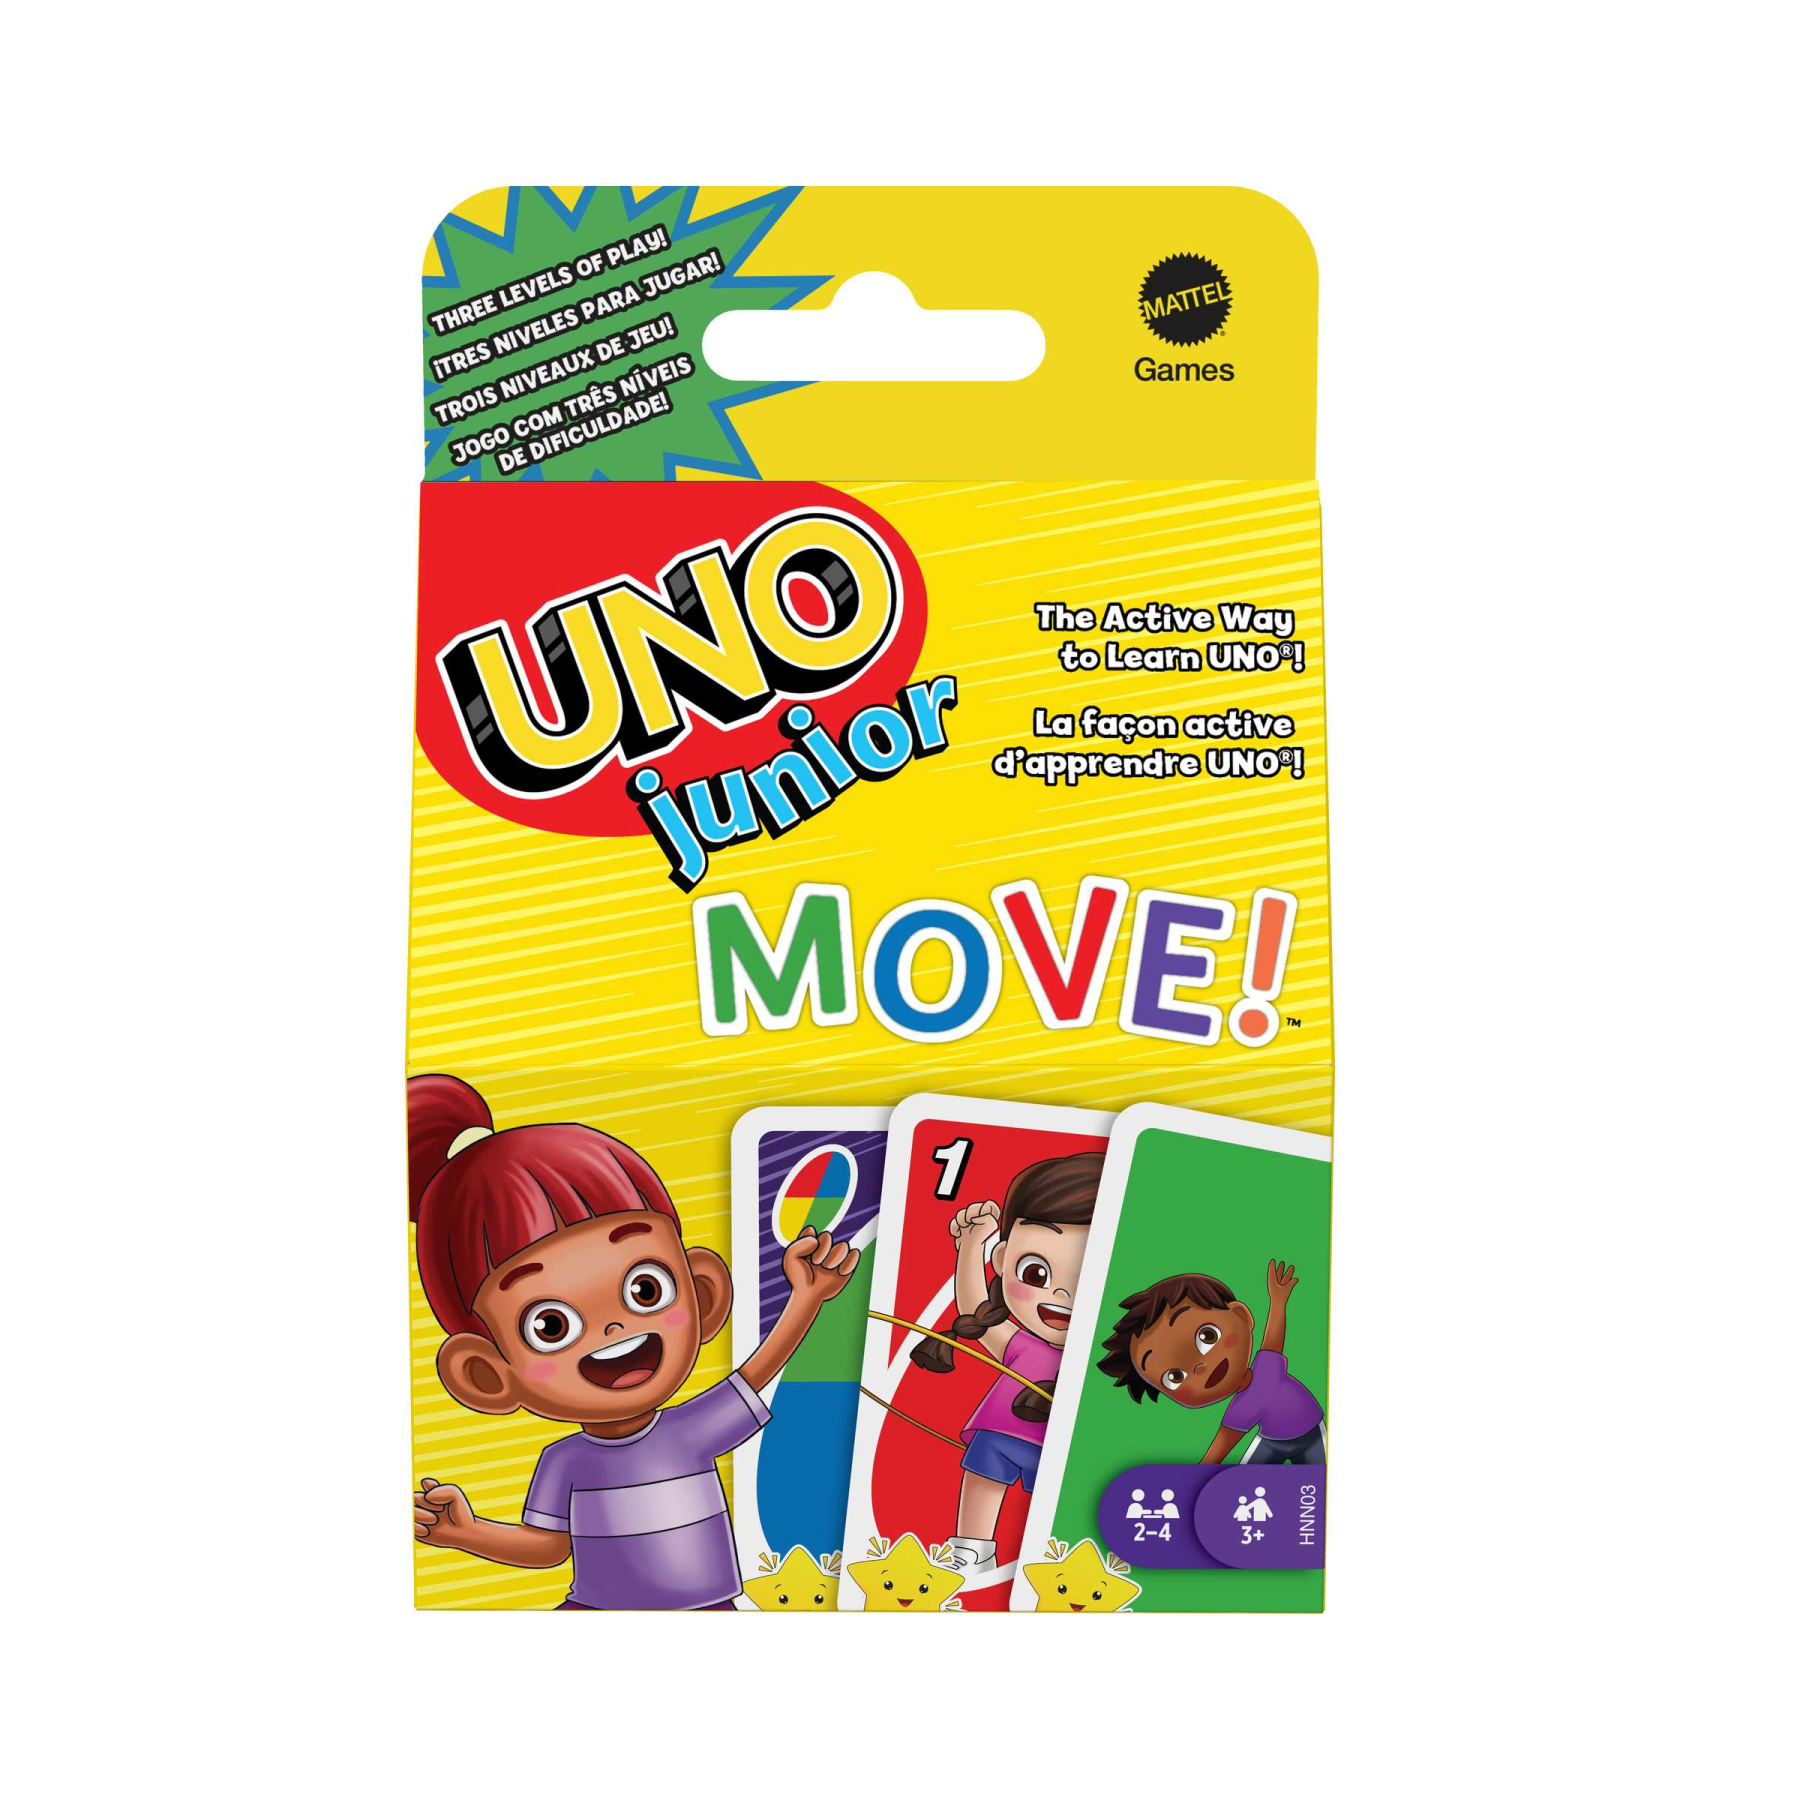 Mattel games - uno junior move!, gioco di carte per bambini per serate di gioco in famiglia, viaggi, campeggi e feste, giocattolo per bambini 3+ anni, hnn03 - MATTEL GAMES, UNO